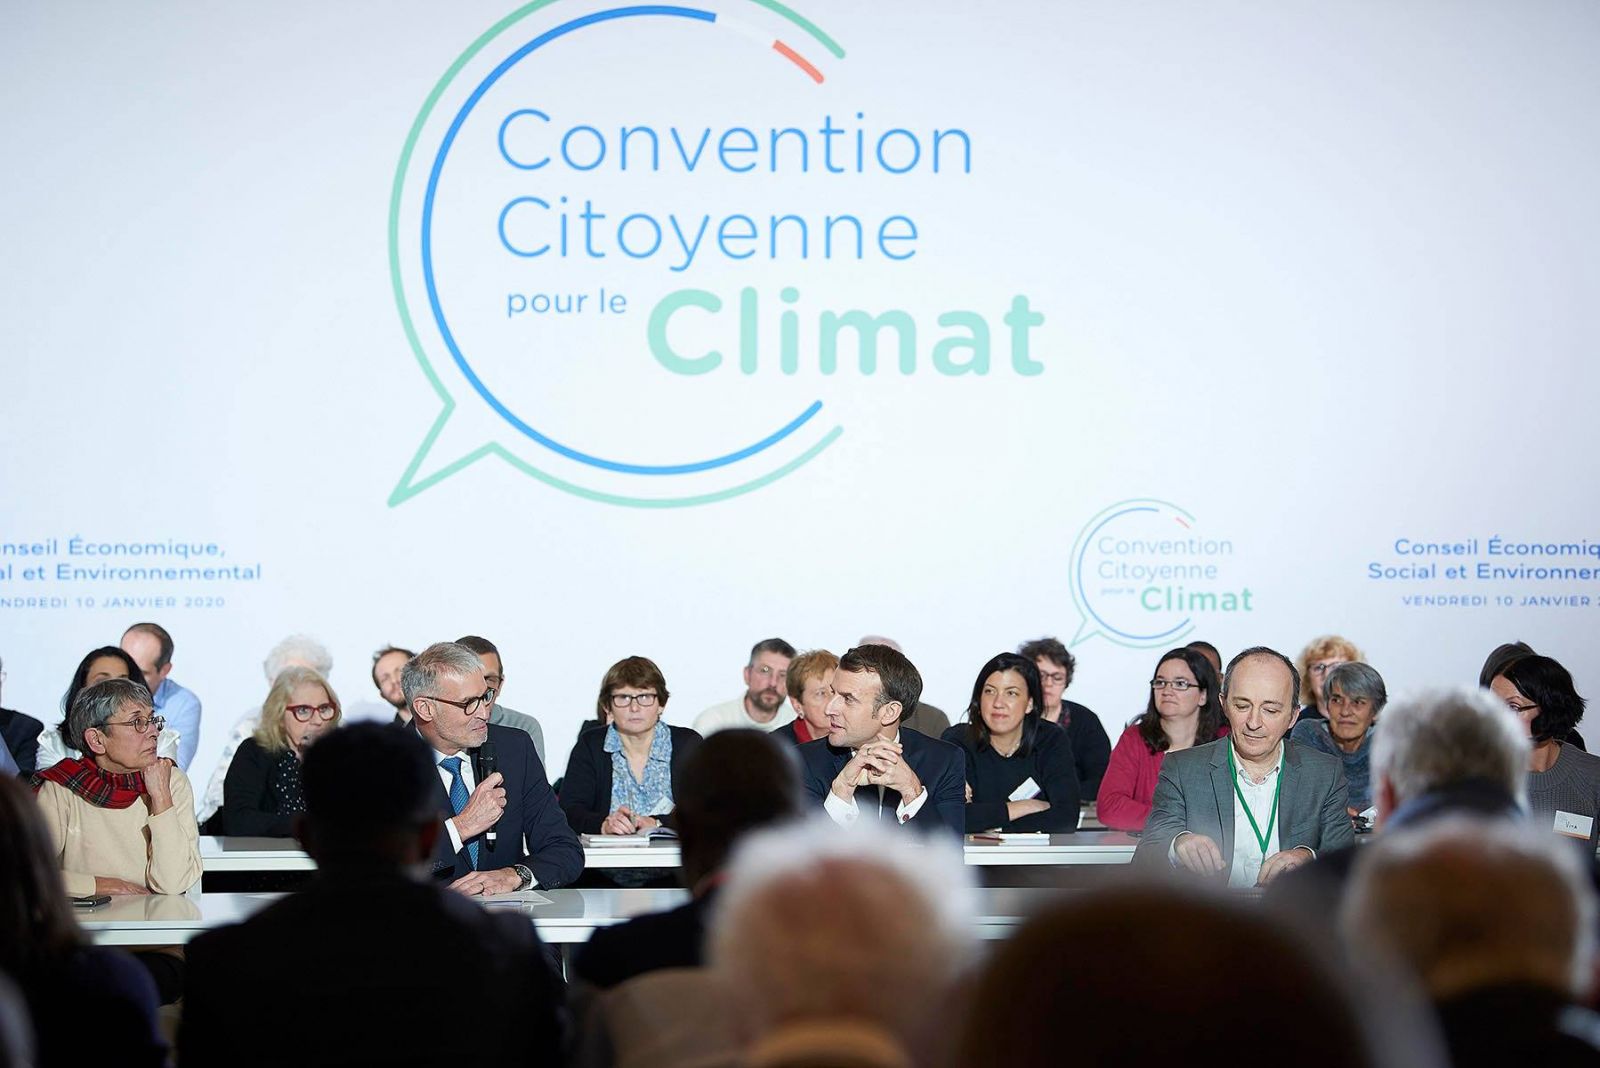 Convention Citoyenne Climat Impact Economique